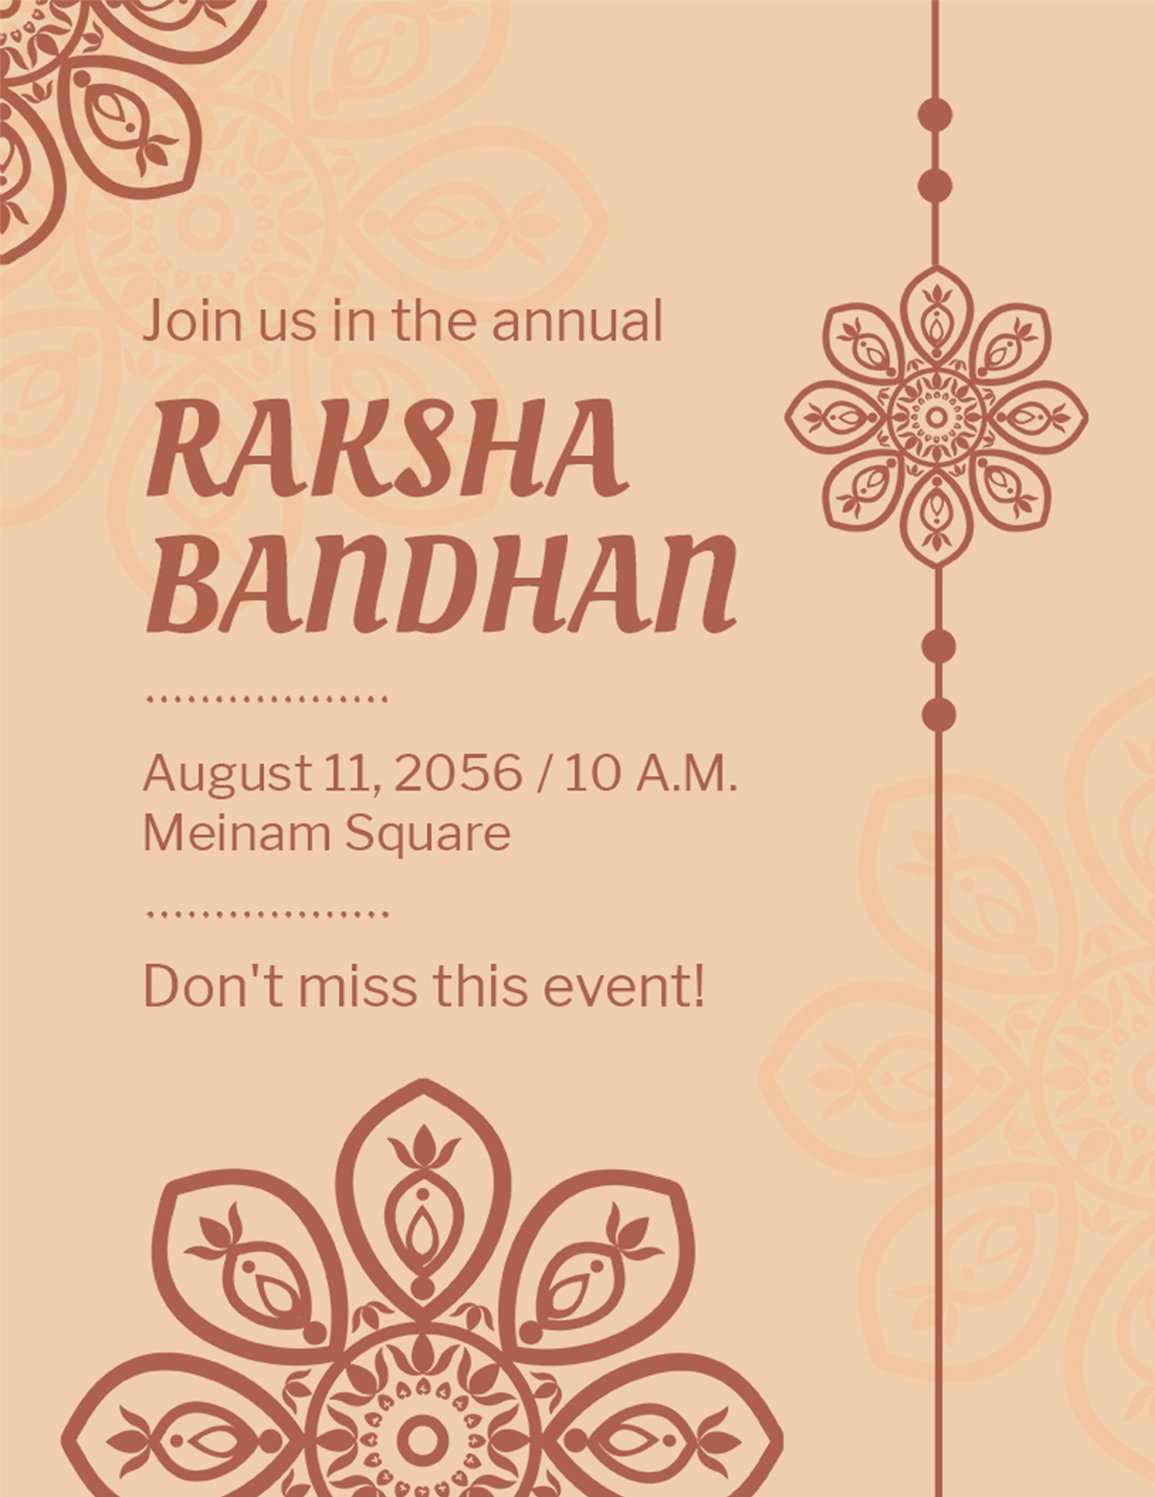 Raksha Bandhan Celebration Templates - Design, Free, Download ...